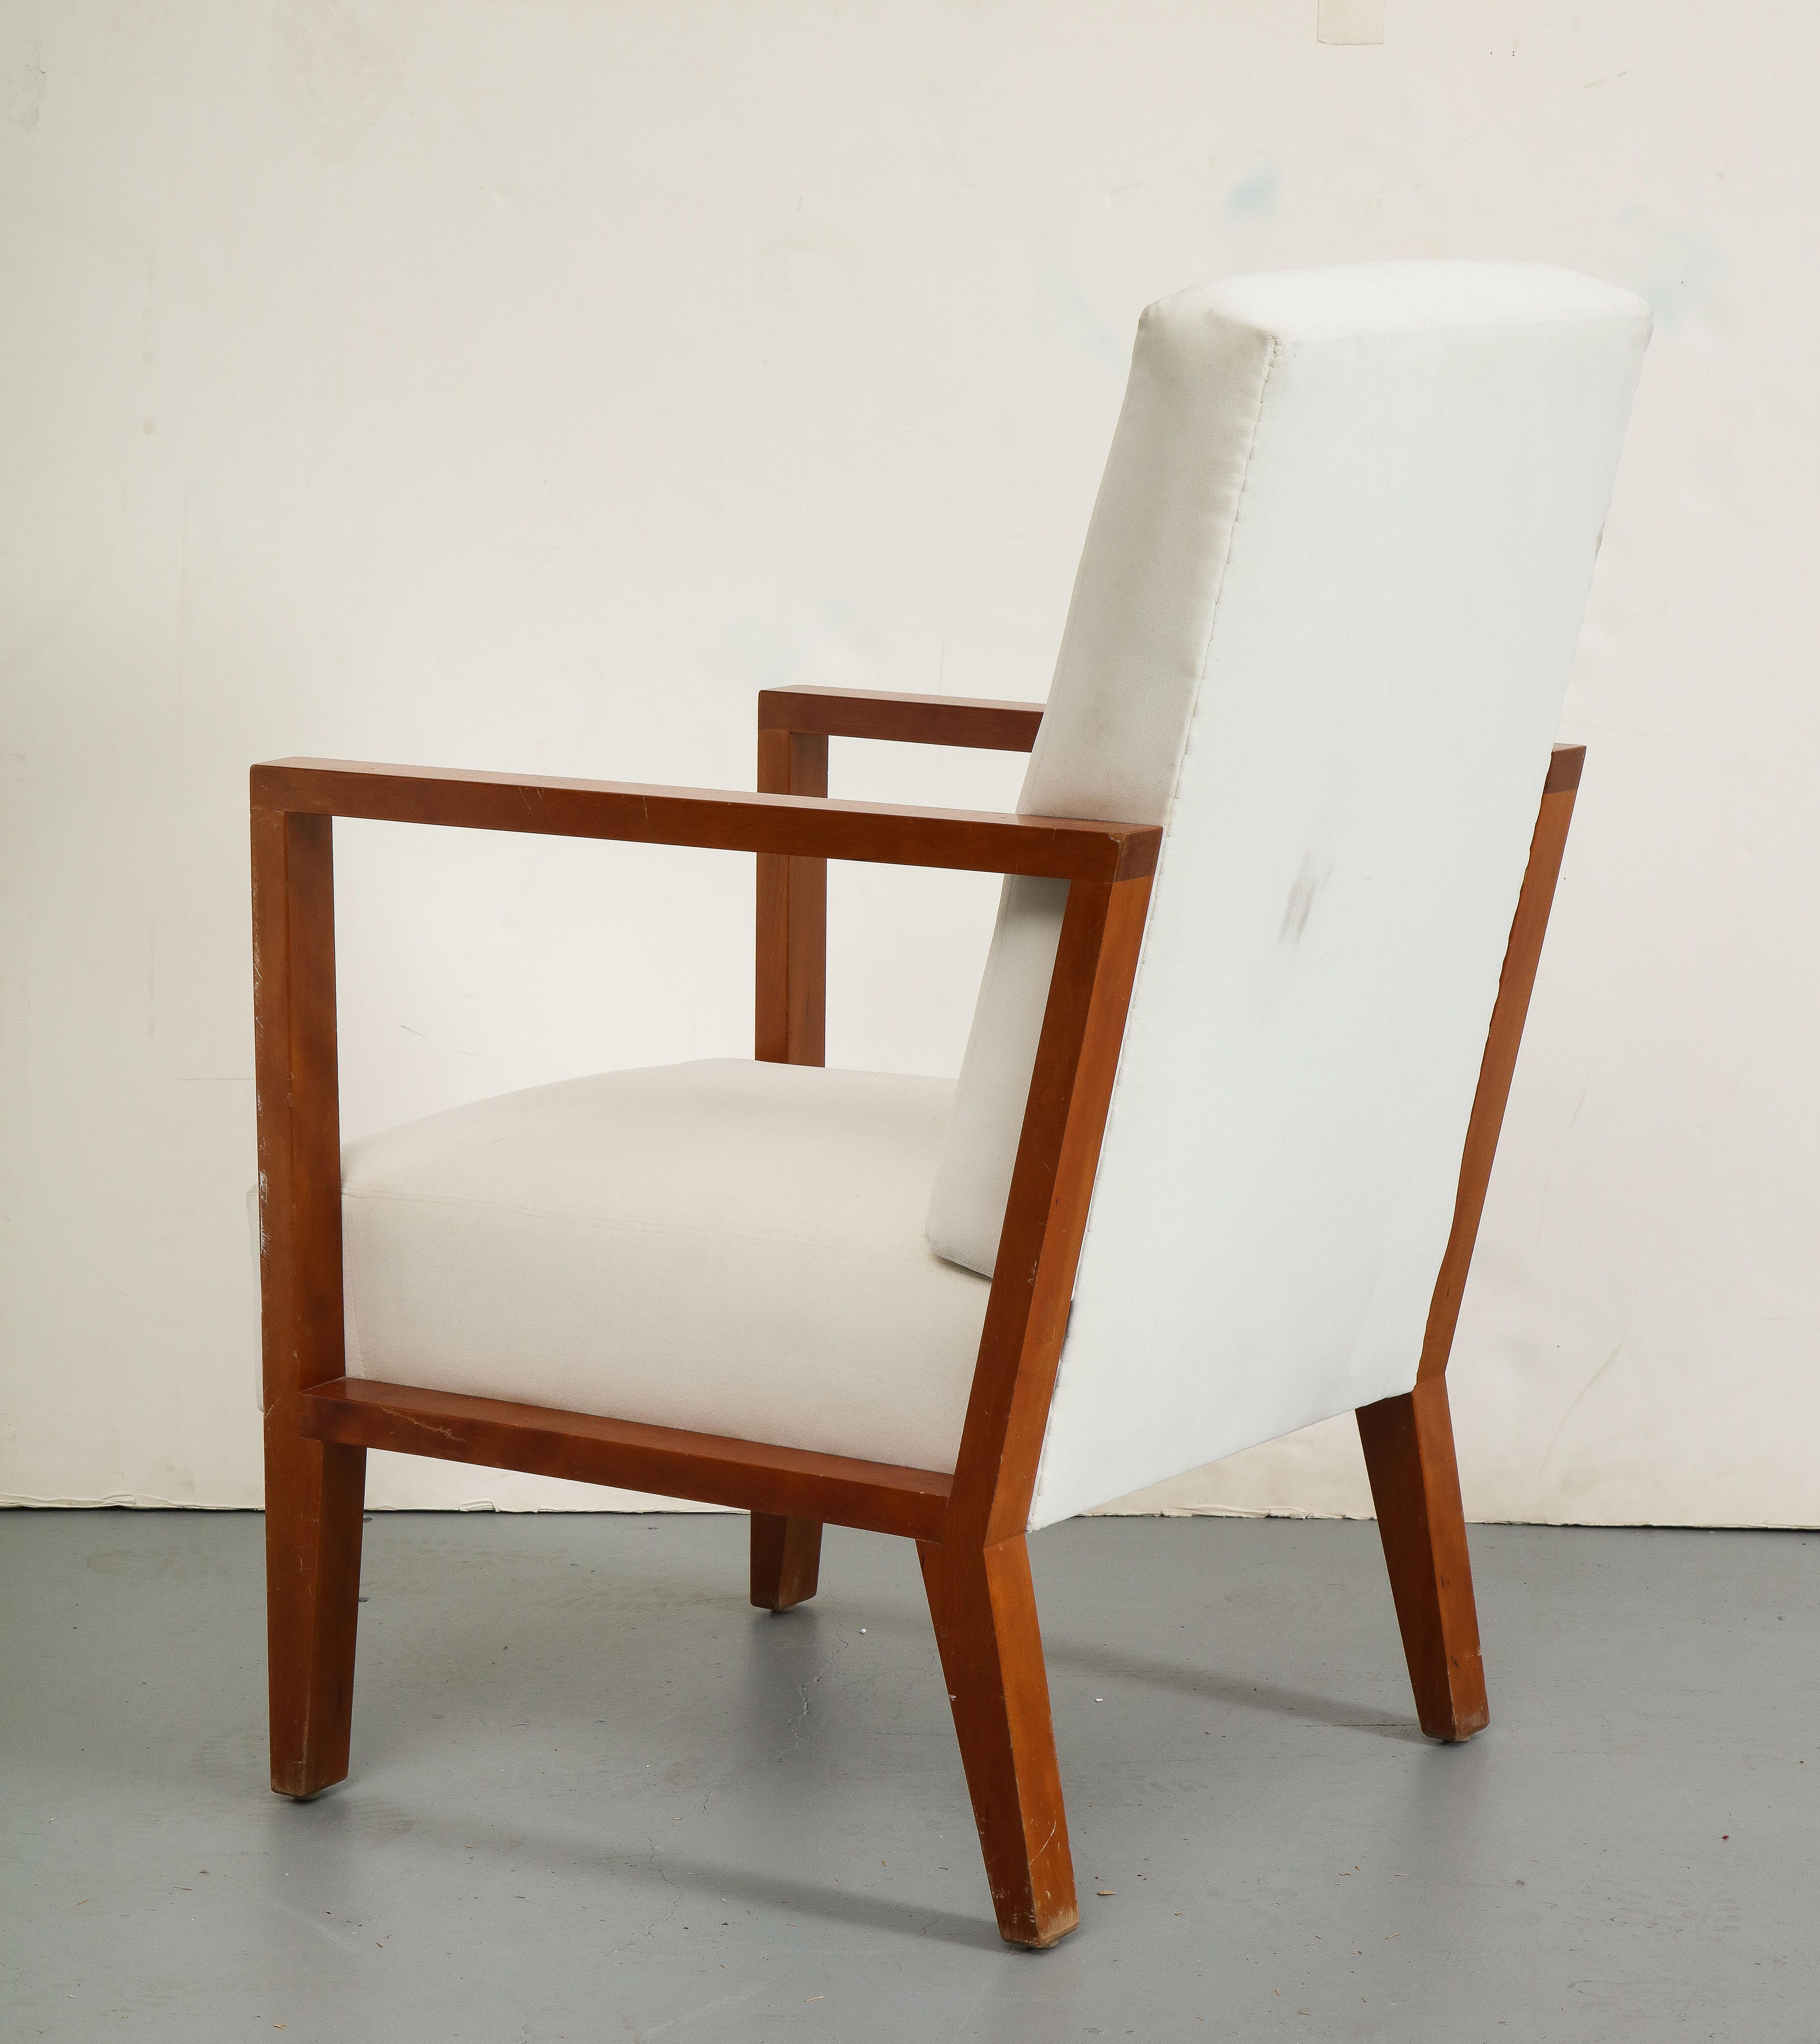 20th Century Jean-Michel Frank Style Oak Arm Chair by Niedermaier